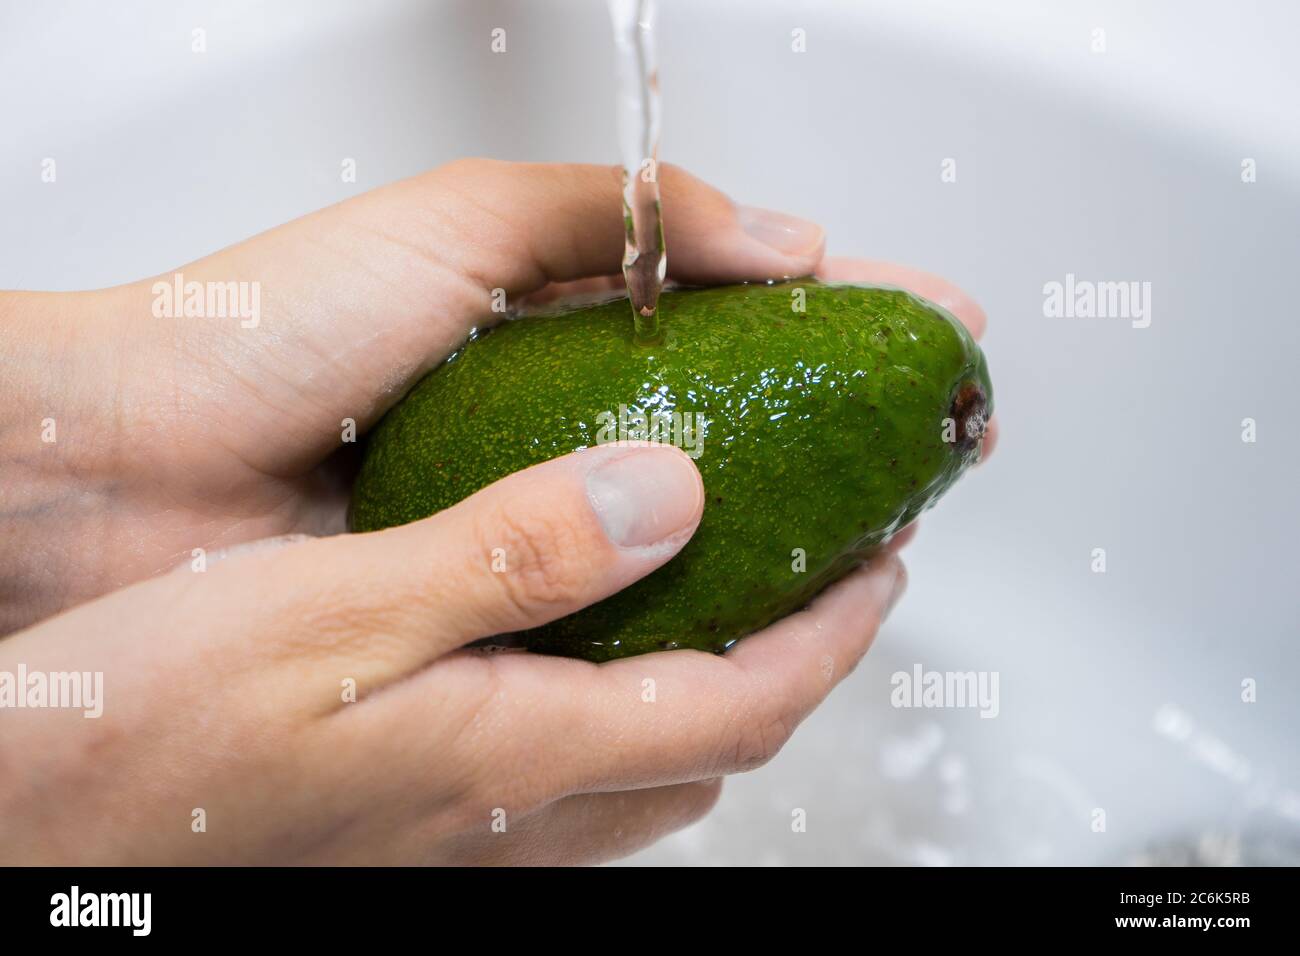 Waschen von Früchten unter fließendem Wasser. Hände und Avocado unter einem  Wasserstrom Stockfotografie - Alamy